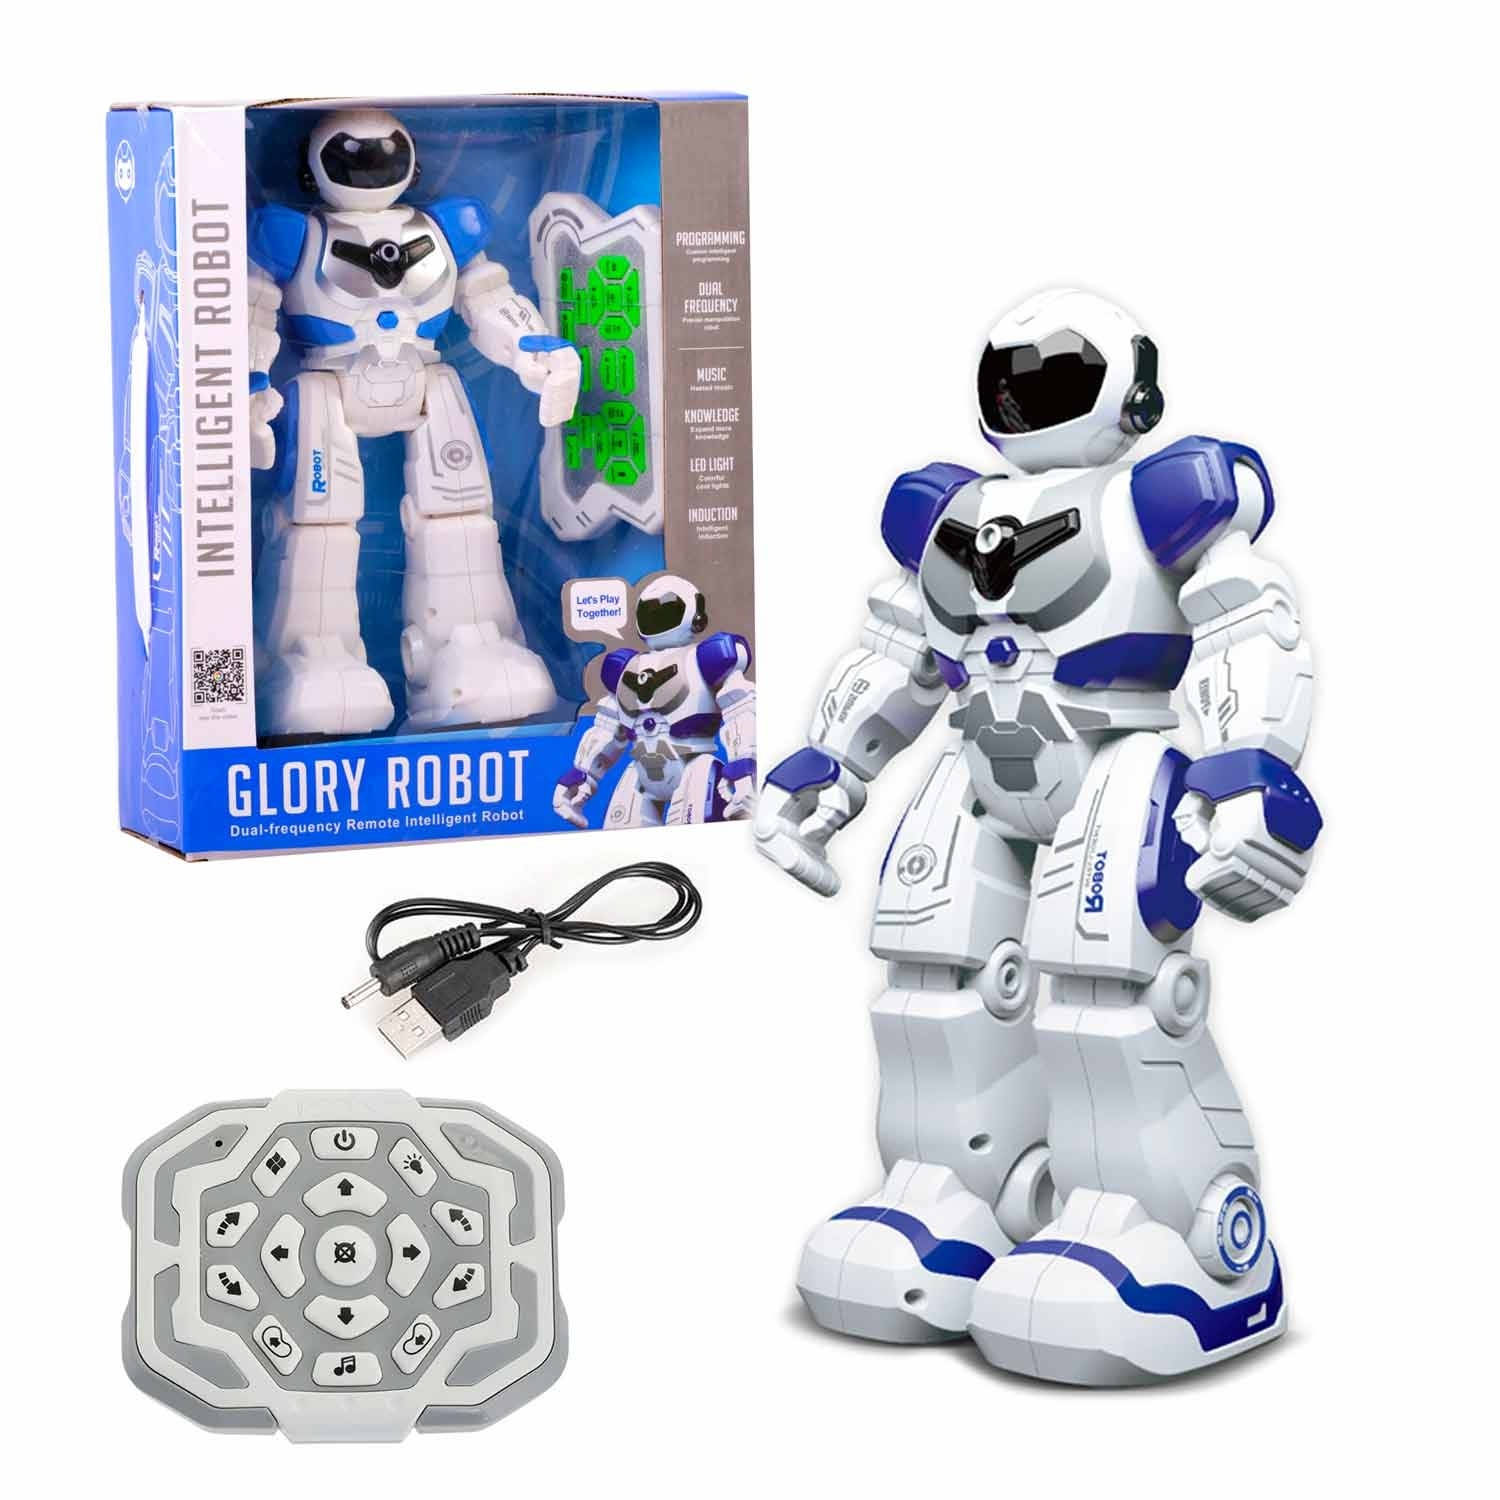 Allerion Intelligente Robot RC Robot Speelgoed Reageert op